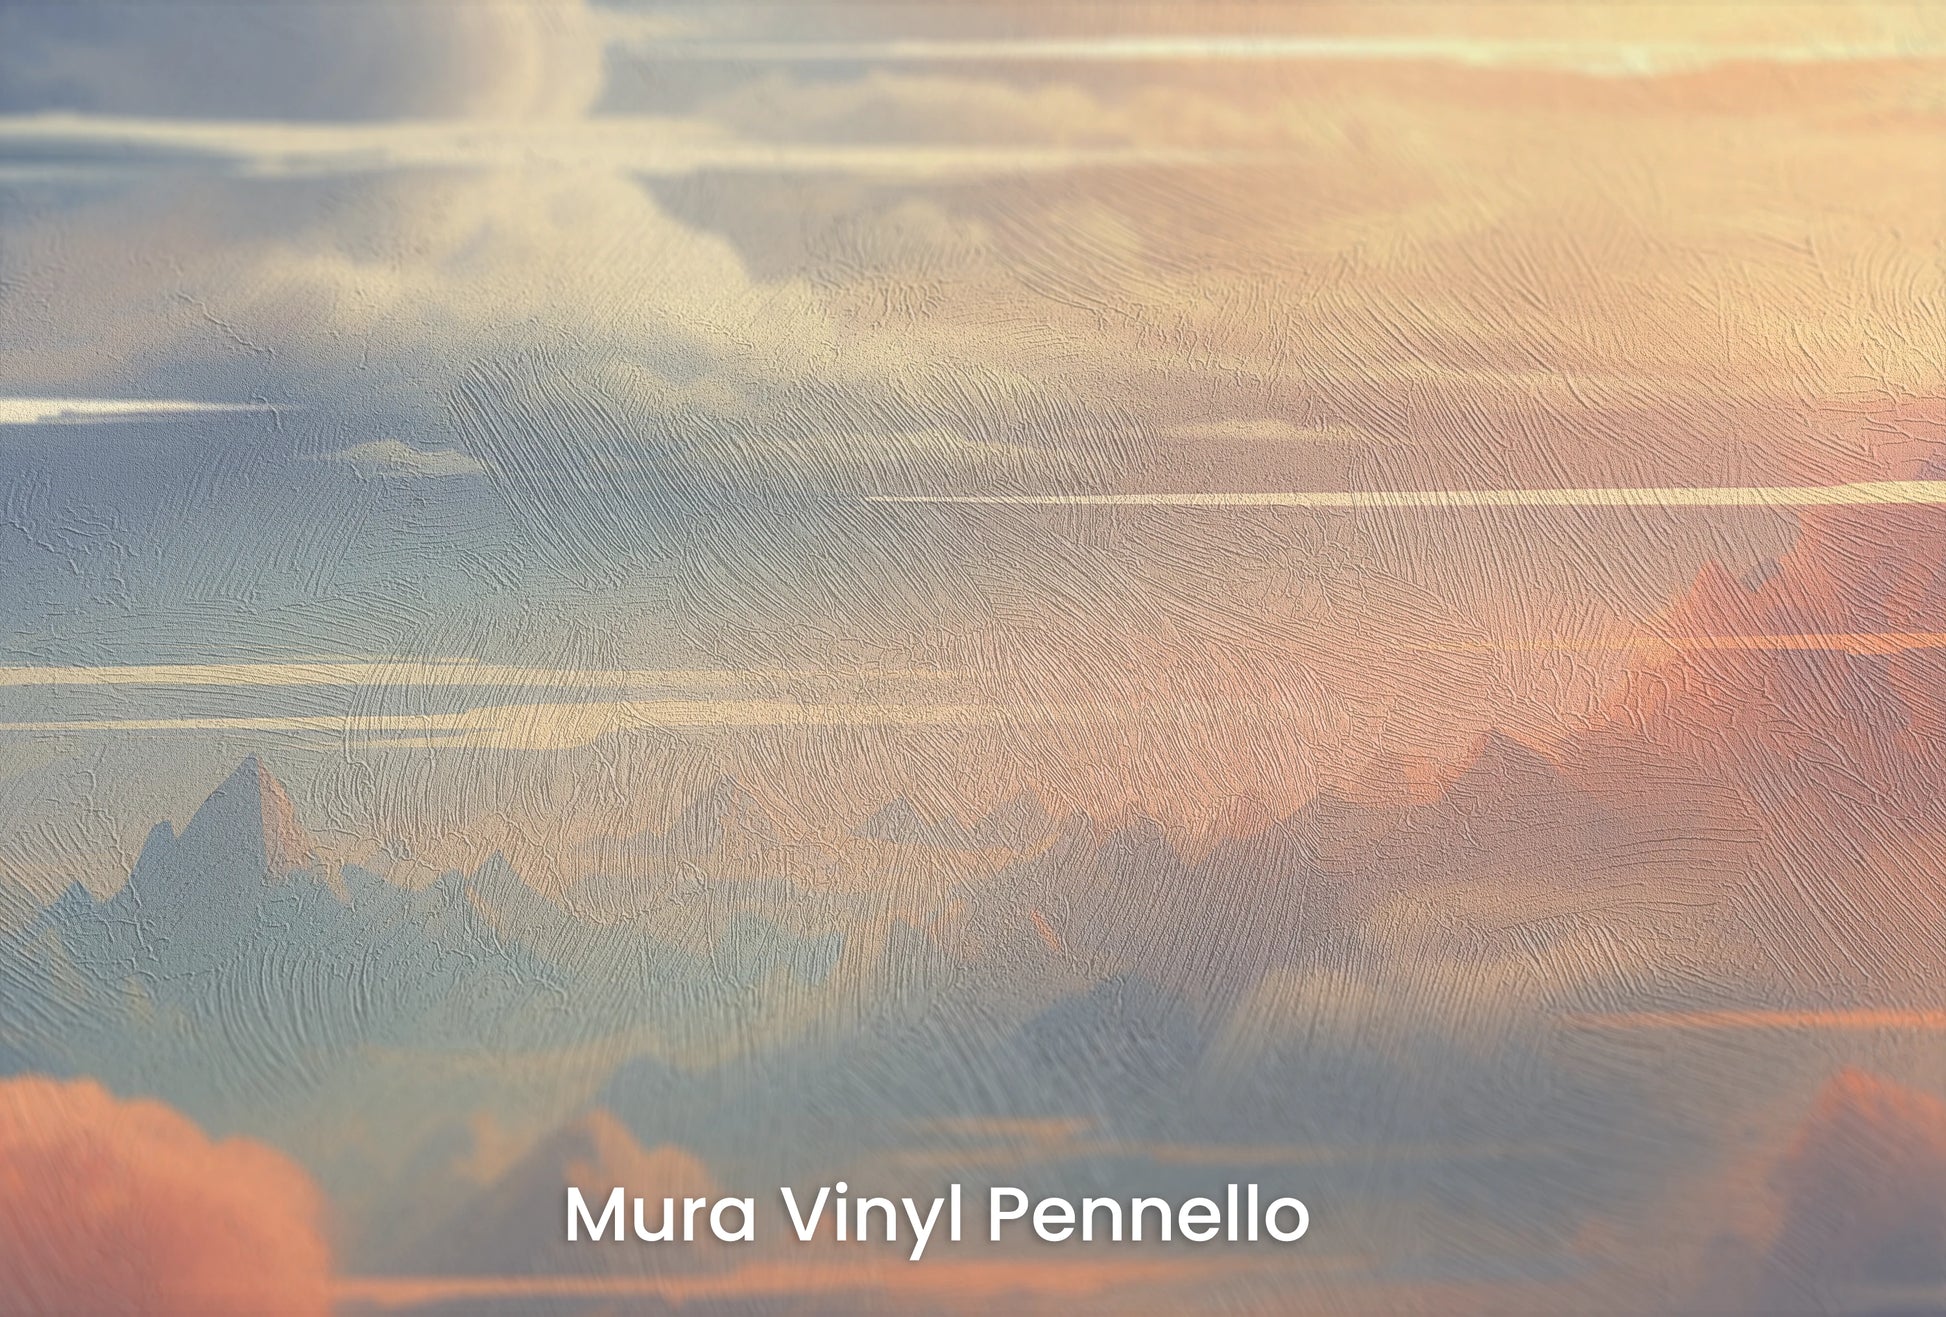 Zbliżenie na artystyczną fototapetę o nazwie Serene Altitudes na podłożu Mura Vinyl Pennello - faktura pociągnięć pędzla malarskiego.